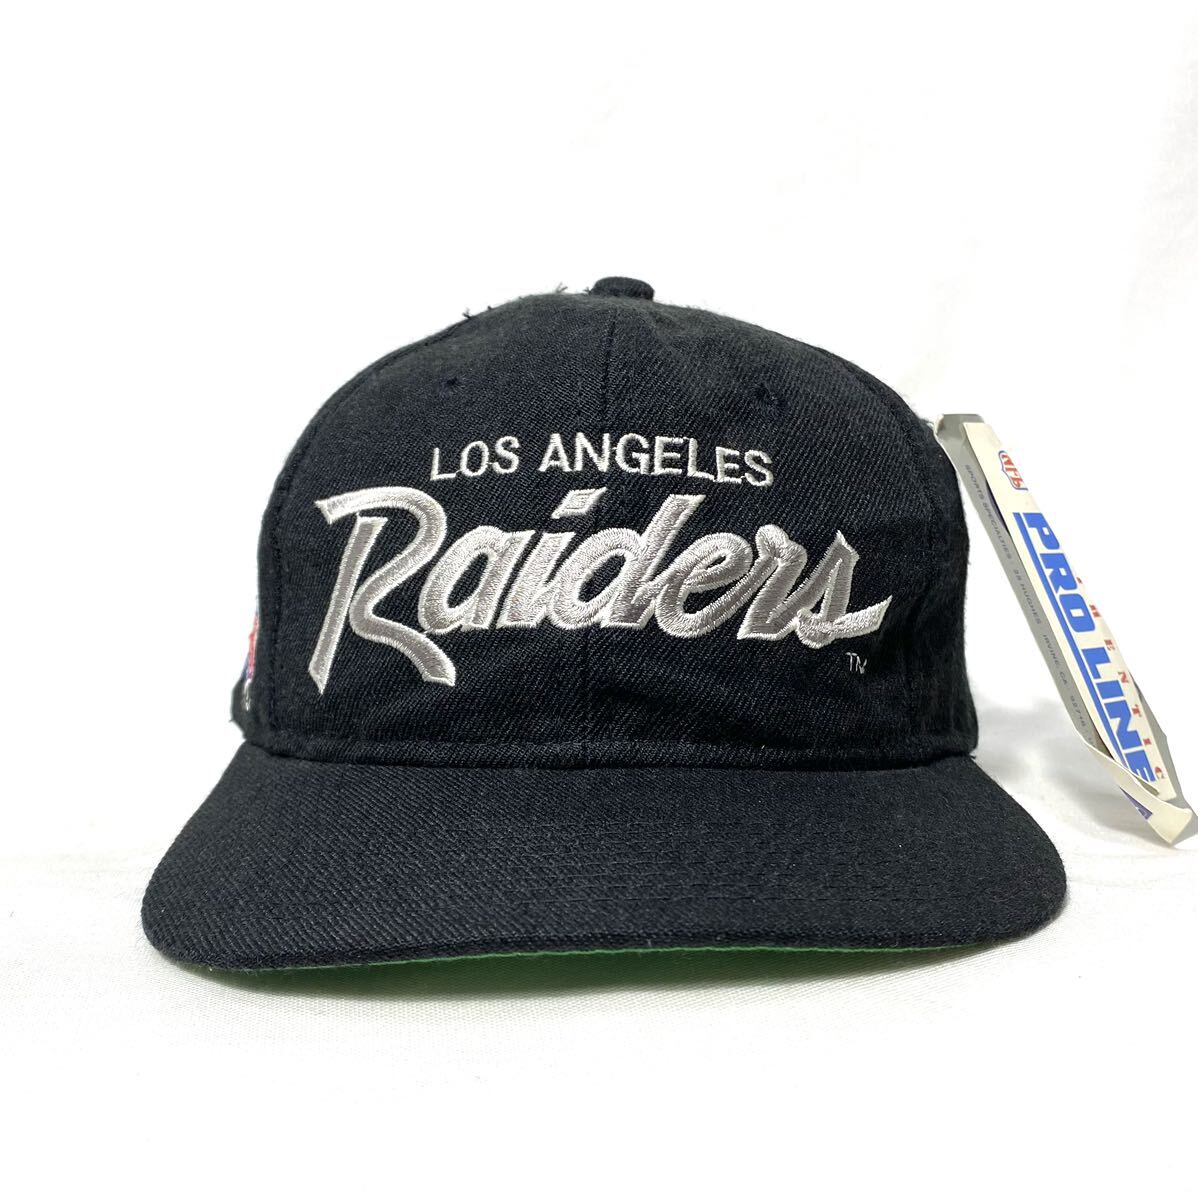 # unused dead stock Vintage Korea made NFL Los Angeles Raiders Raider s snap back cap N.W.A ice Cube #